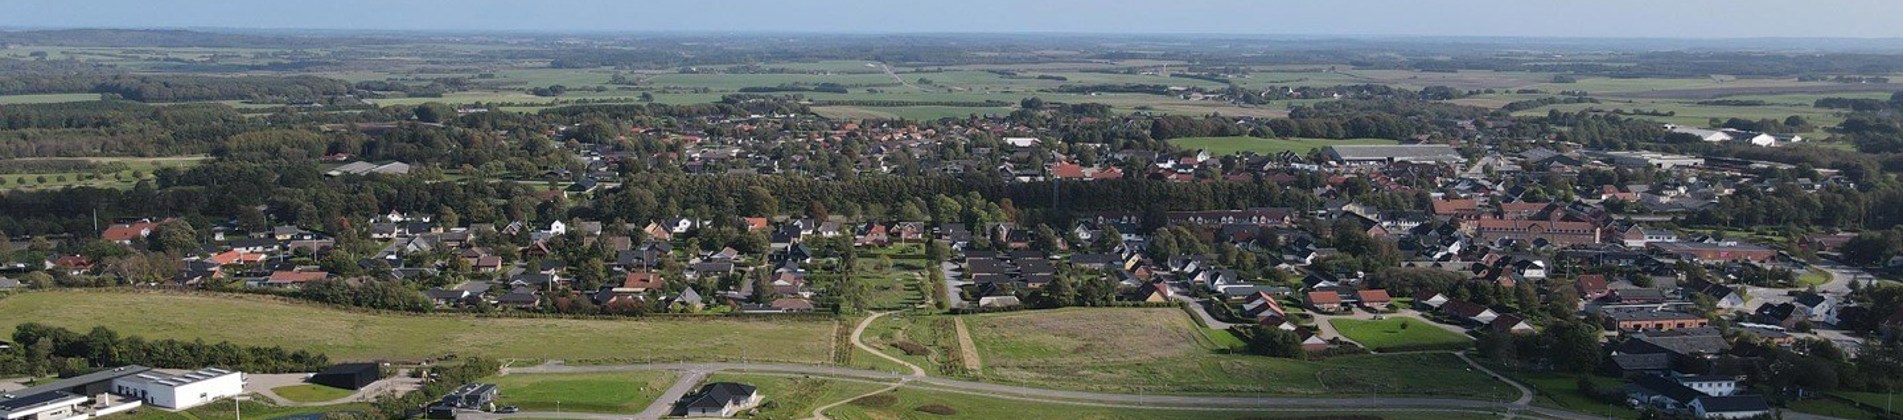 Luftfoto af parcelhus udstykningen Hesselholt Skovhuse i Arden. 